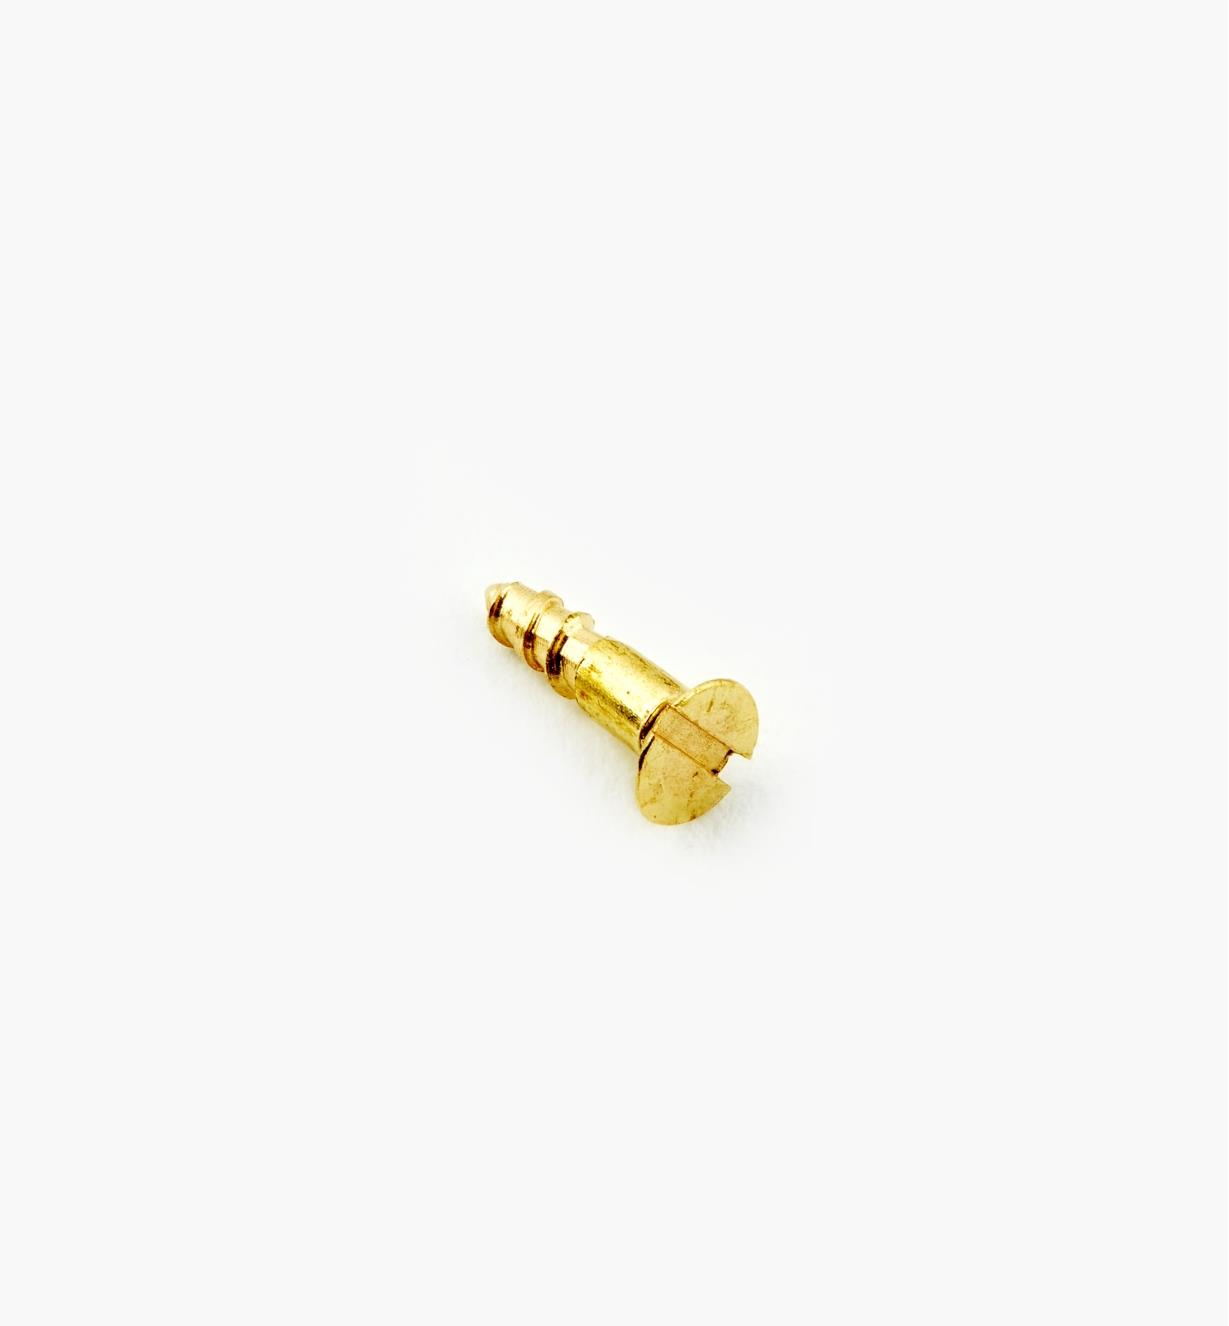 91Z0001 - #0, 1/4" Flat Brass Screws, pkg. of 100